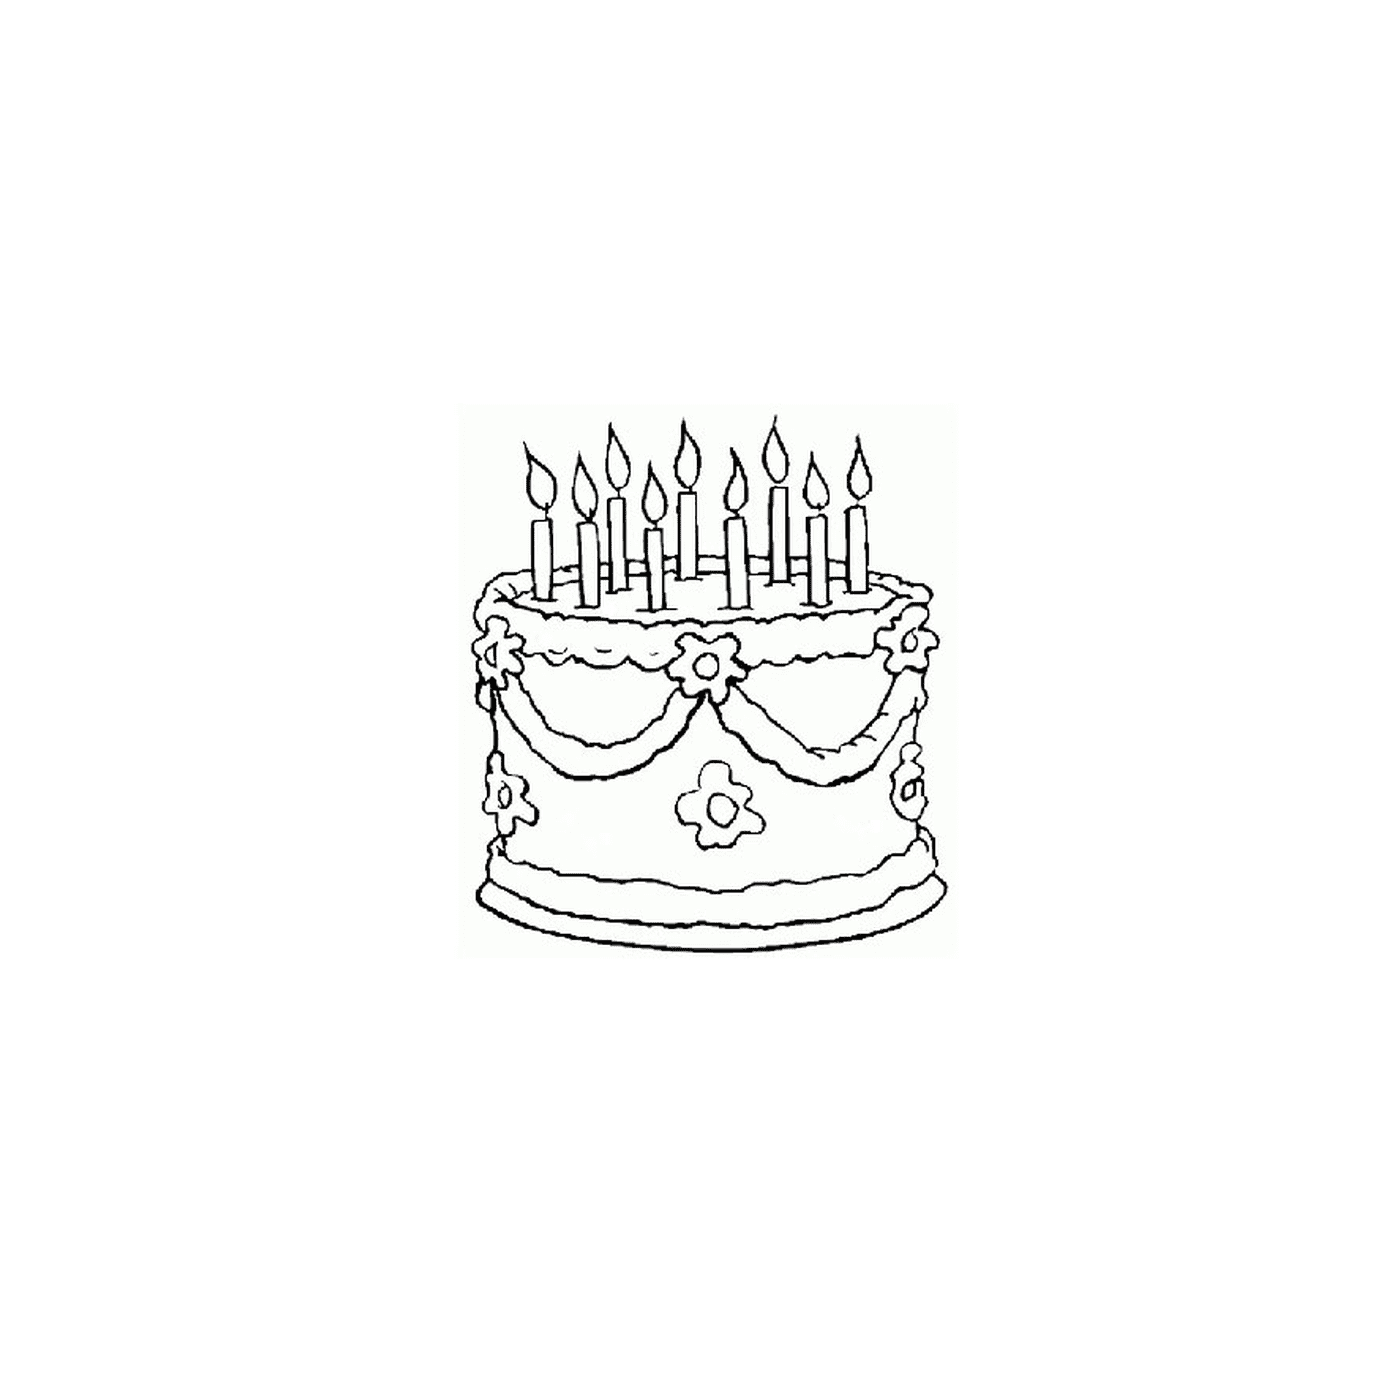  День рождения торт с зажженными свечками 